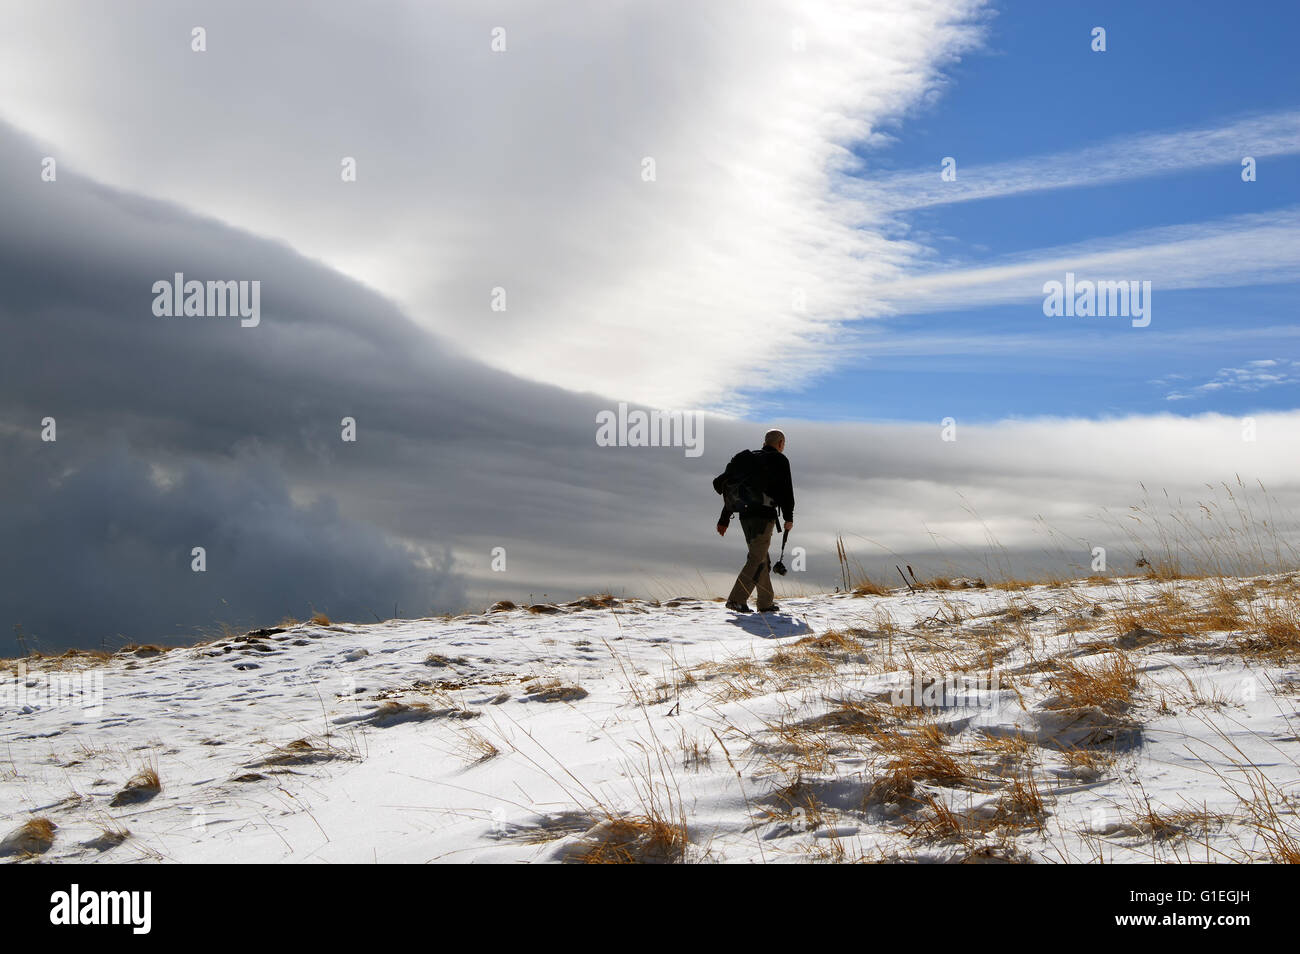 Uomo in una montagna innevata, cambiando rapidamente meteo, una tempesta è in arrivo Foto Stock